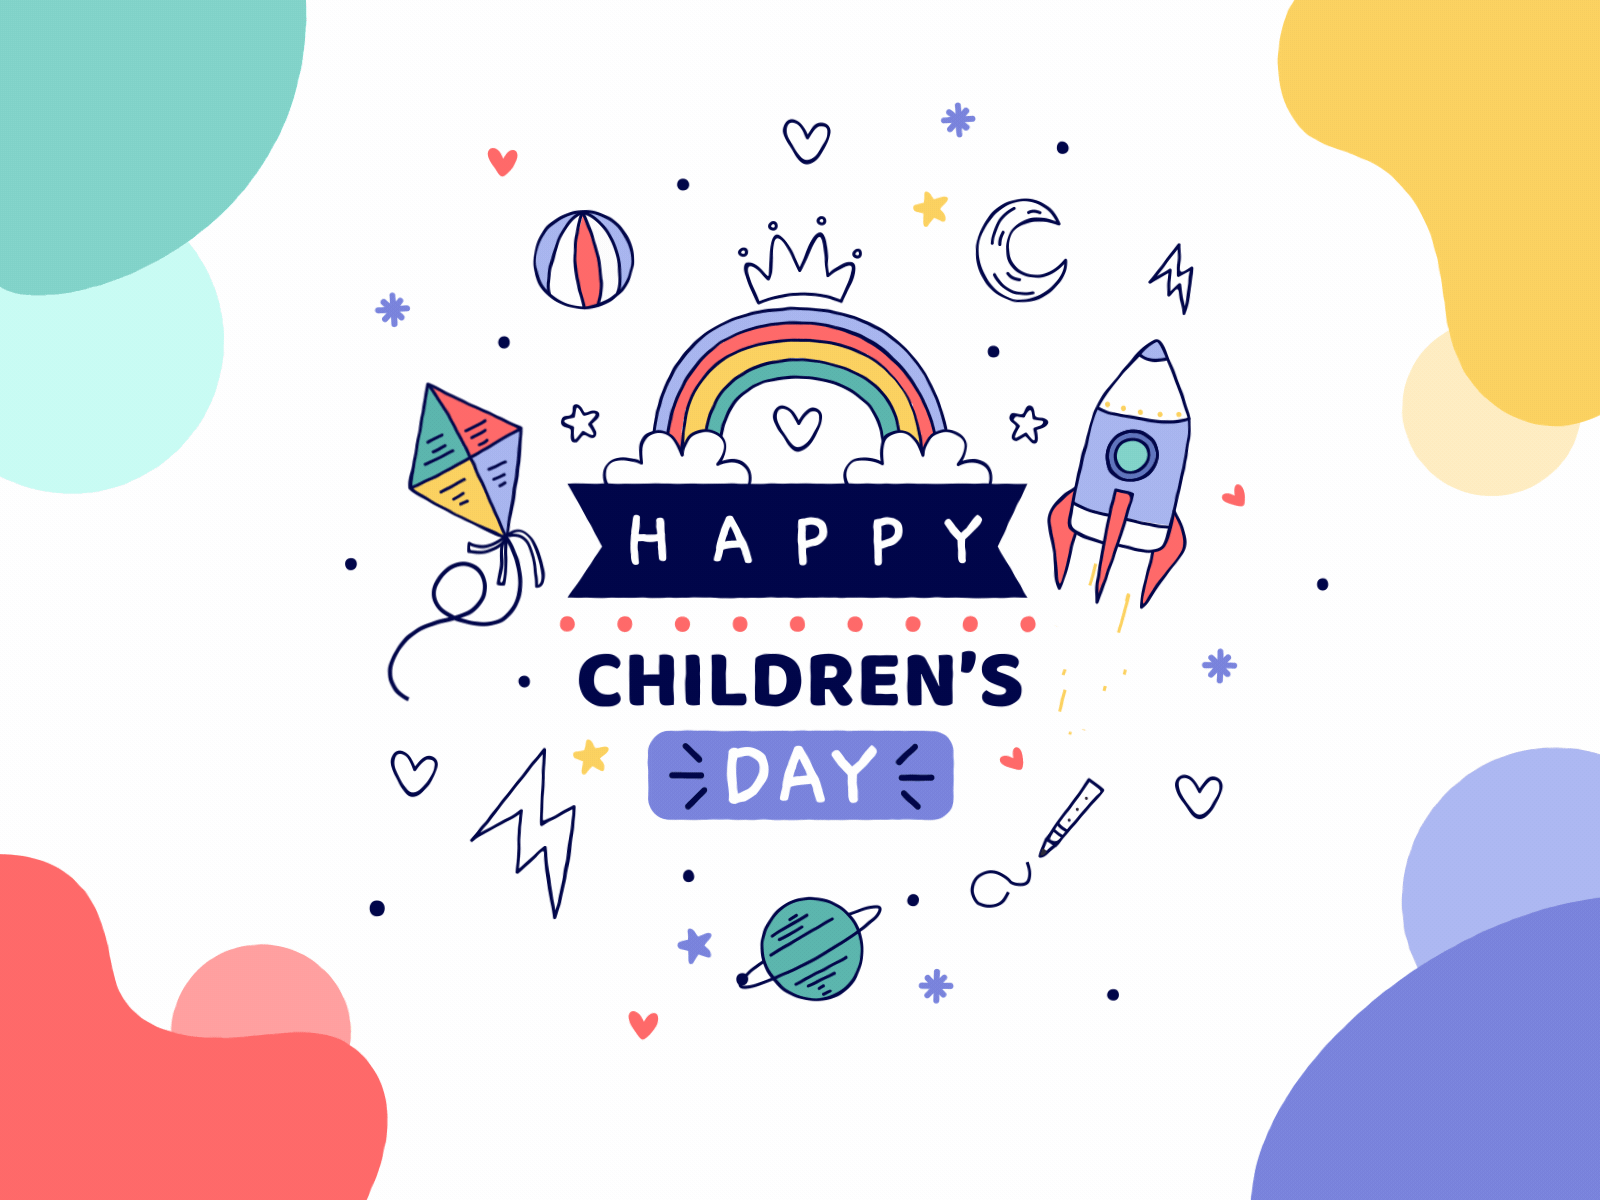 Happy Children's Day by Aleksandra Otlowska on Dribbble